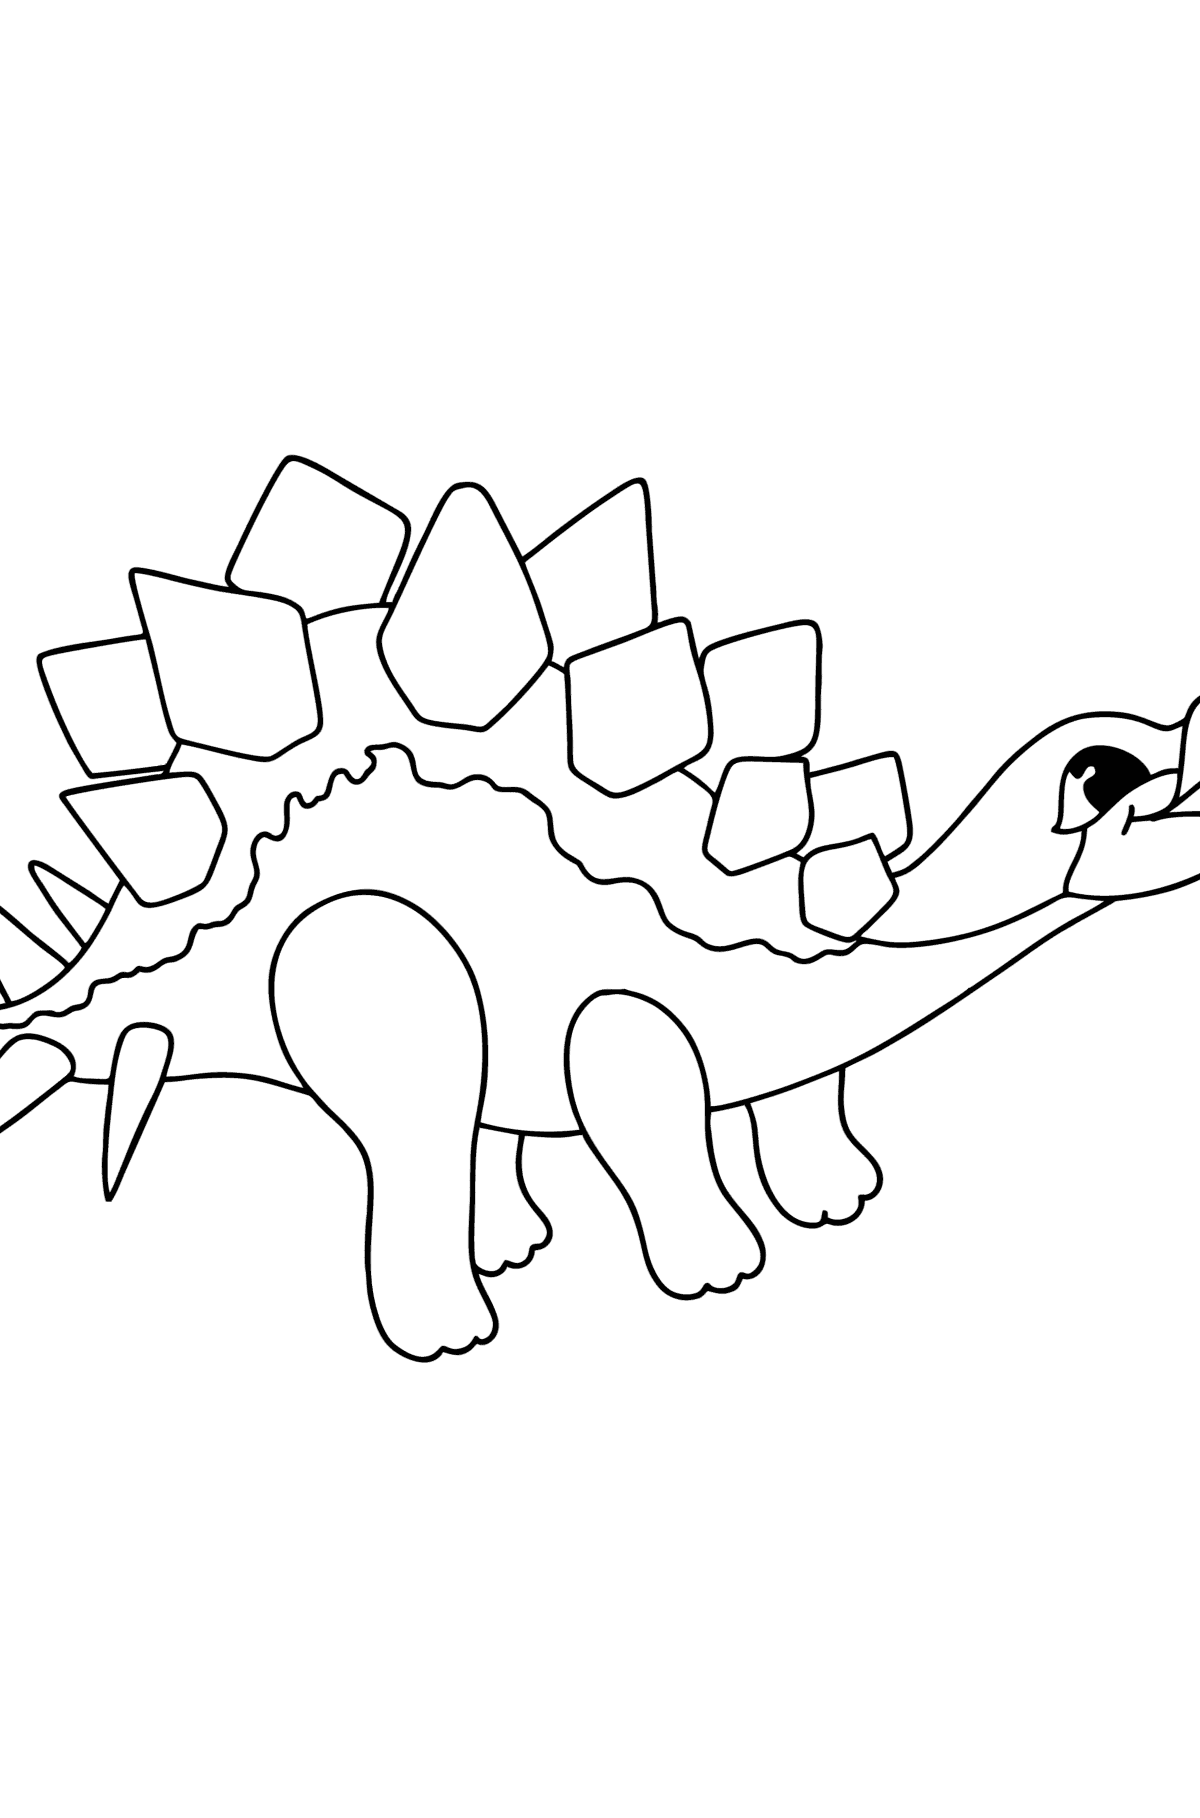 Kleurplaat stegosaurus - kleurplaten voor kinderen